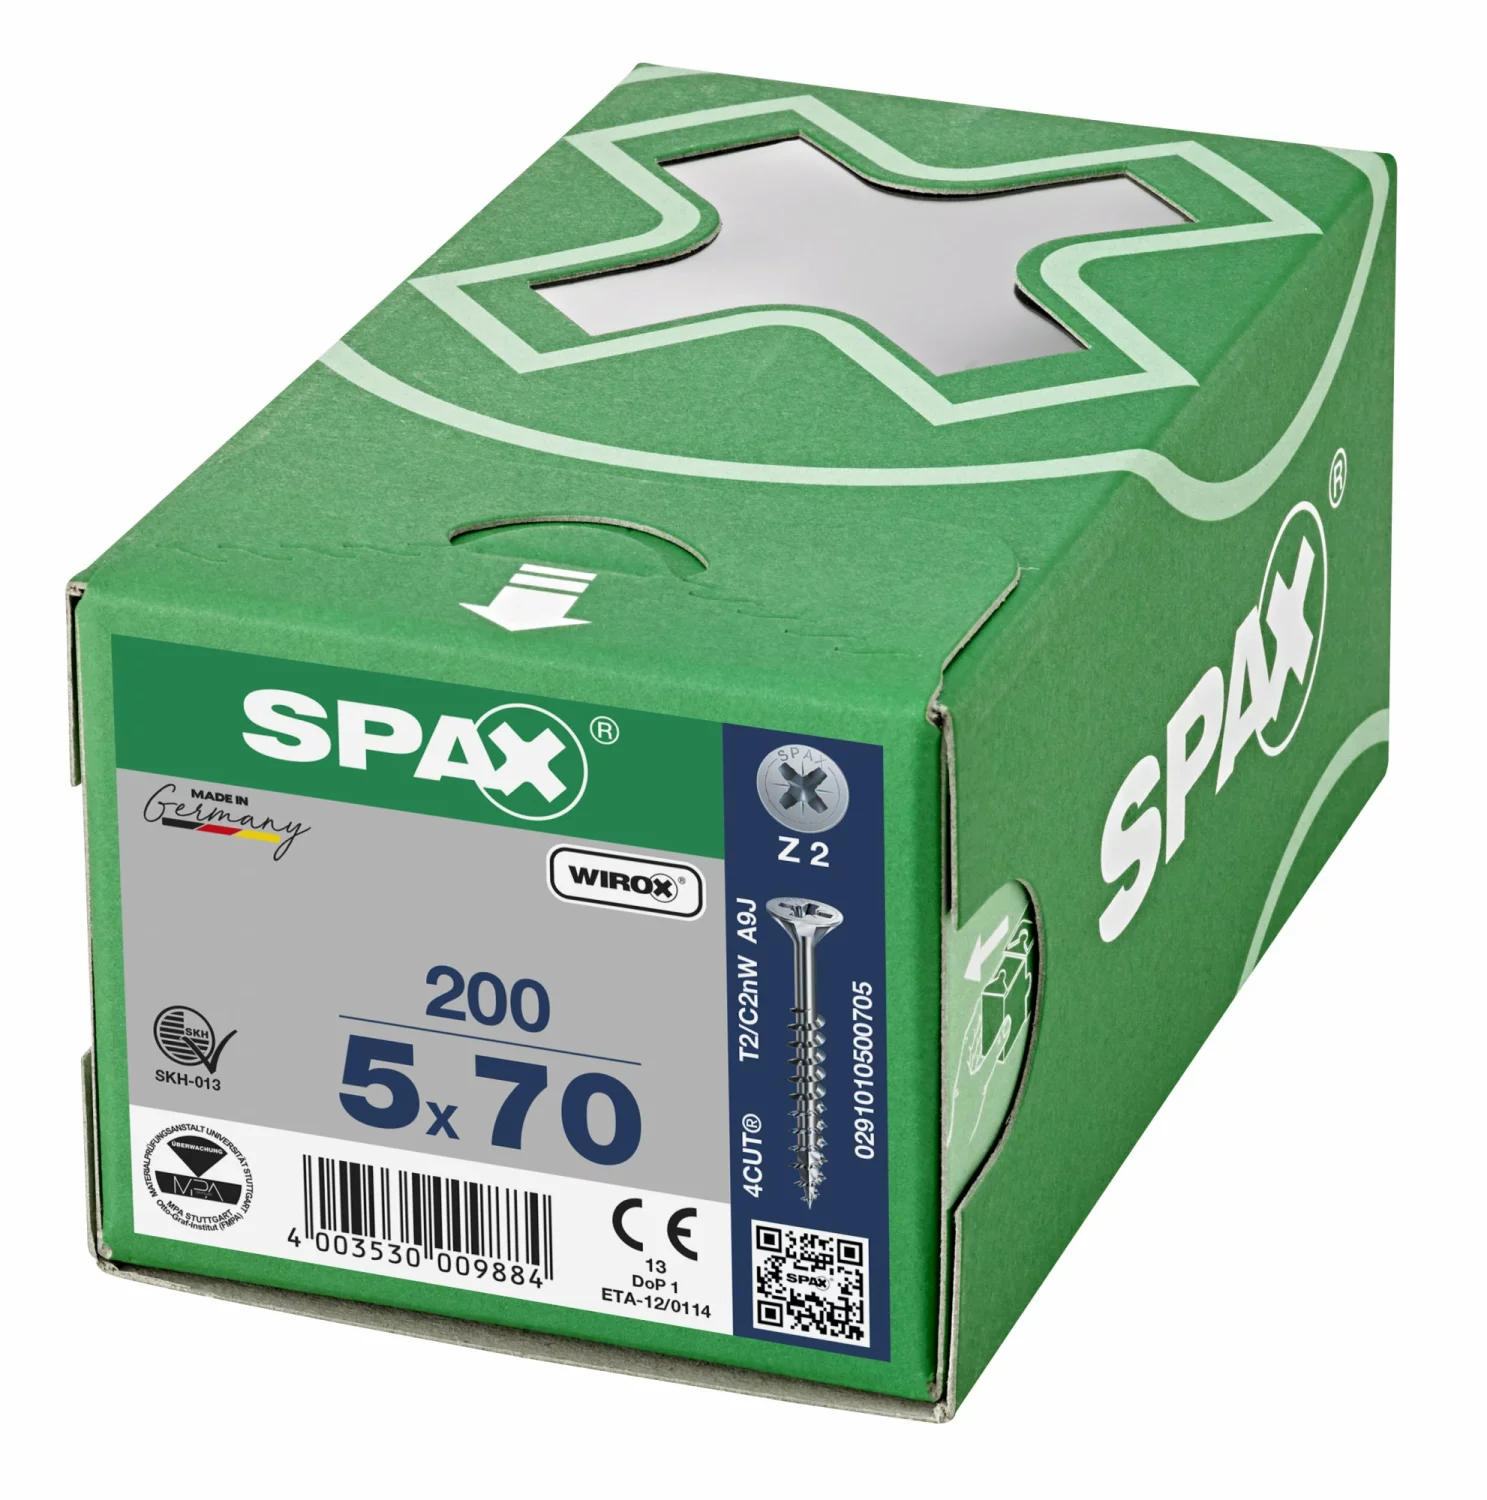 SPAX 291010500705 Universele schroef, Verzonken kop, 5 x 70, Deeldraad, Kruiskop Z2 - WIROX - 200 stuks-image